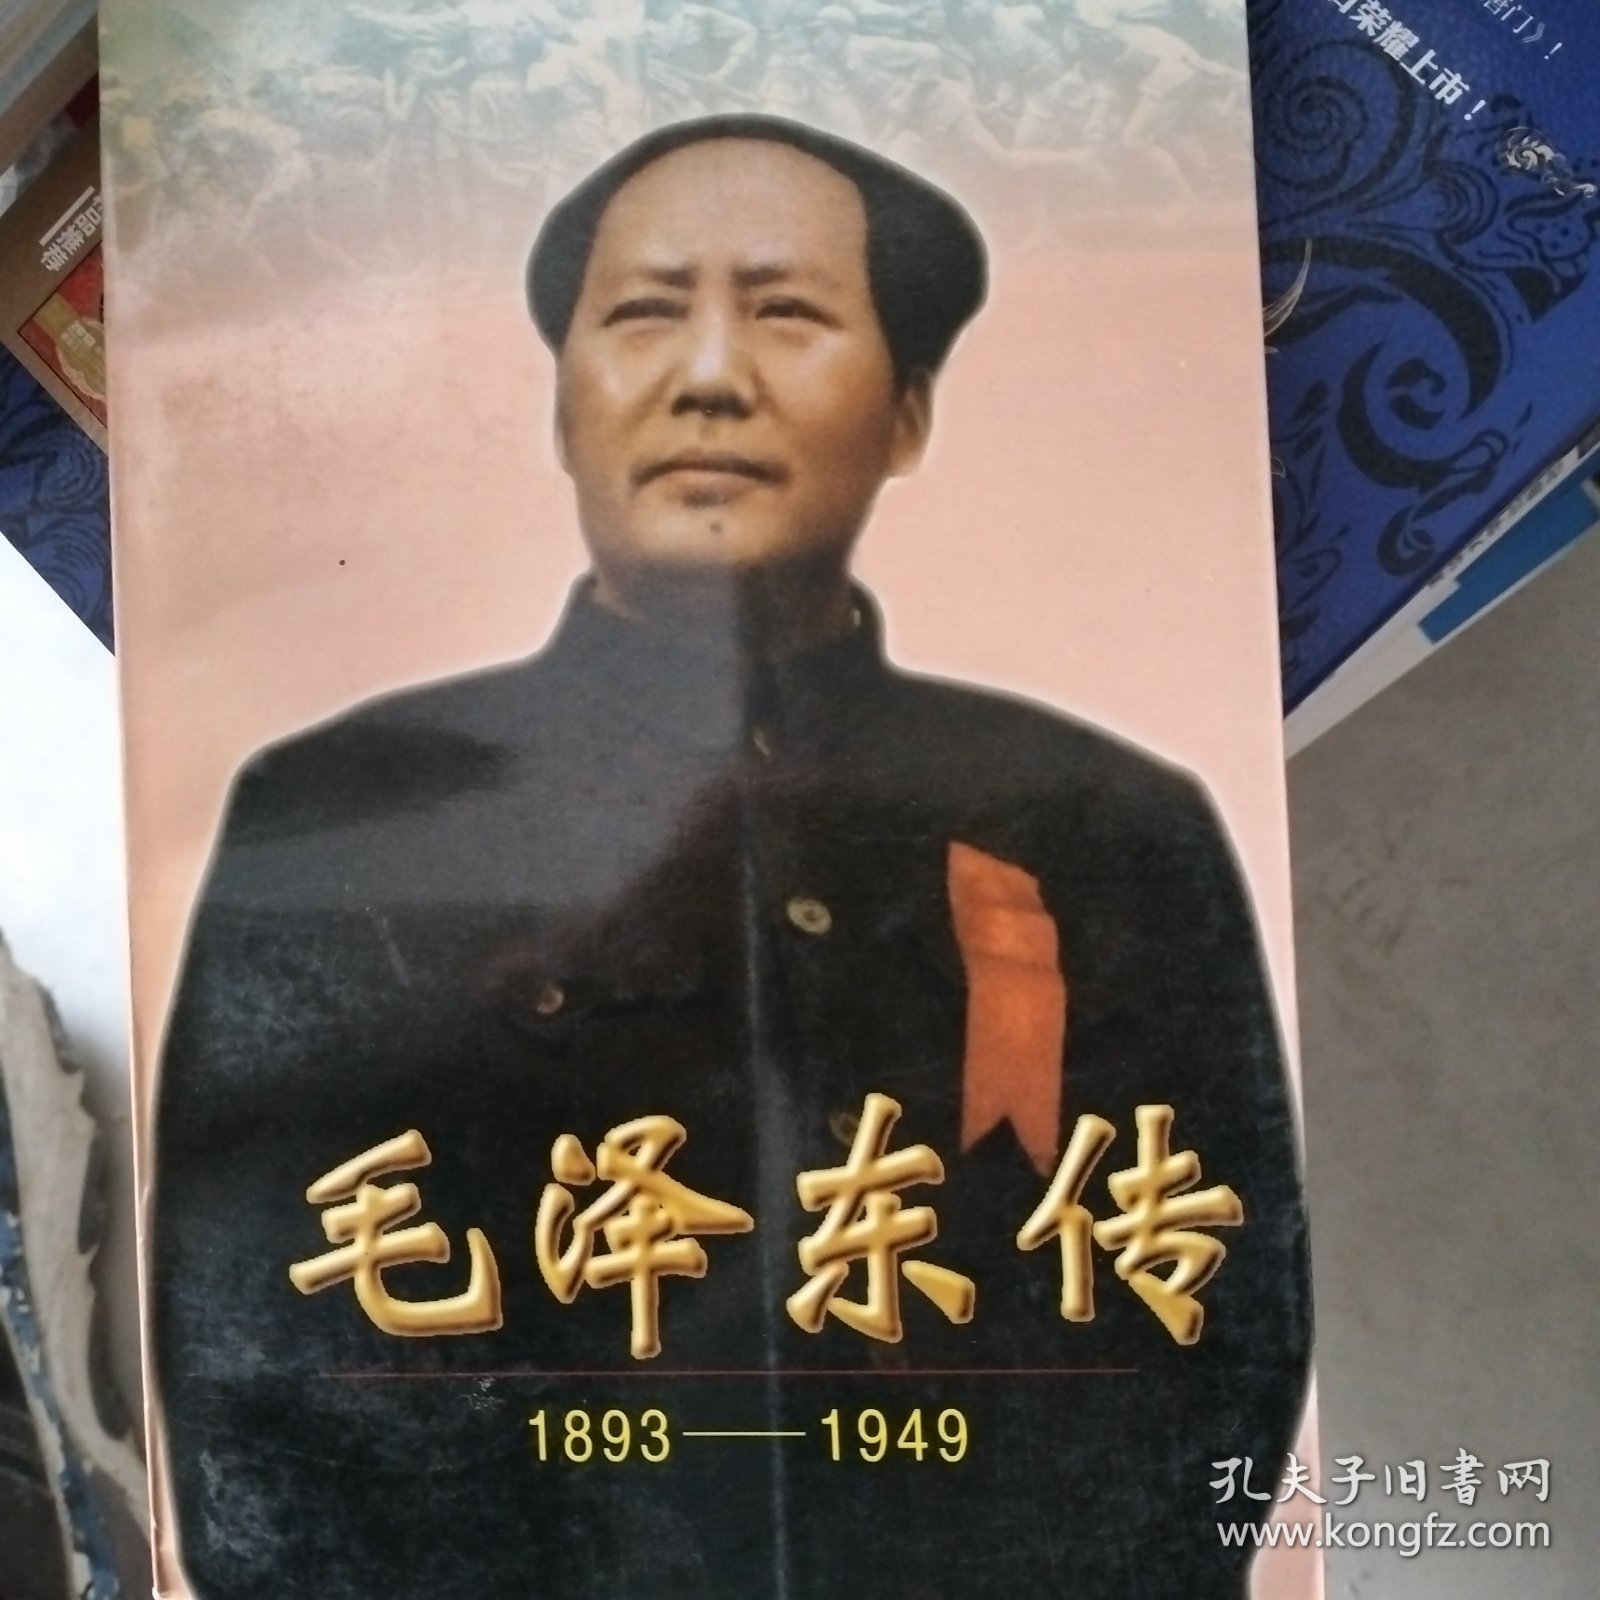 毛泽东传上:1893-1949